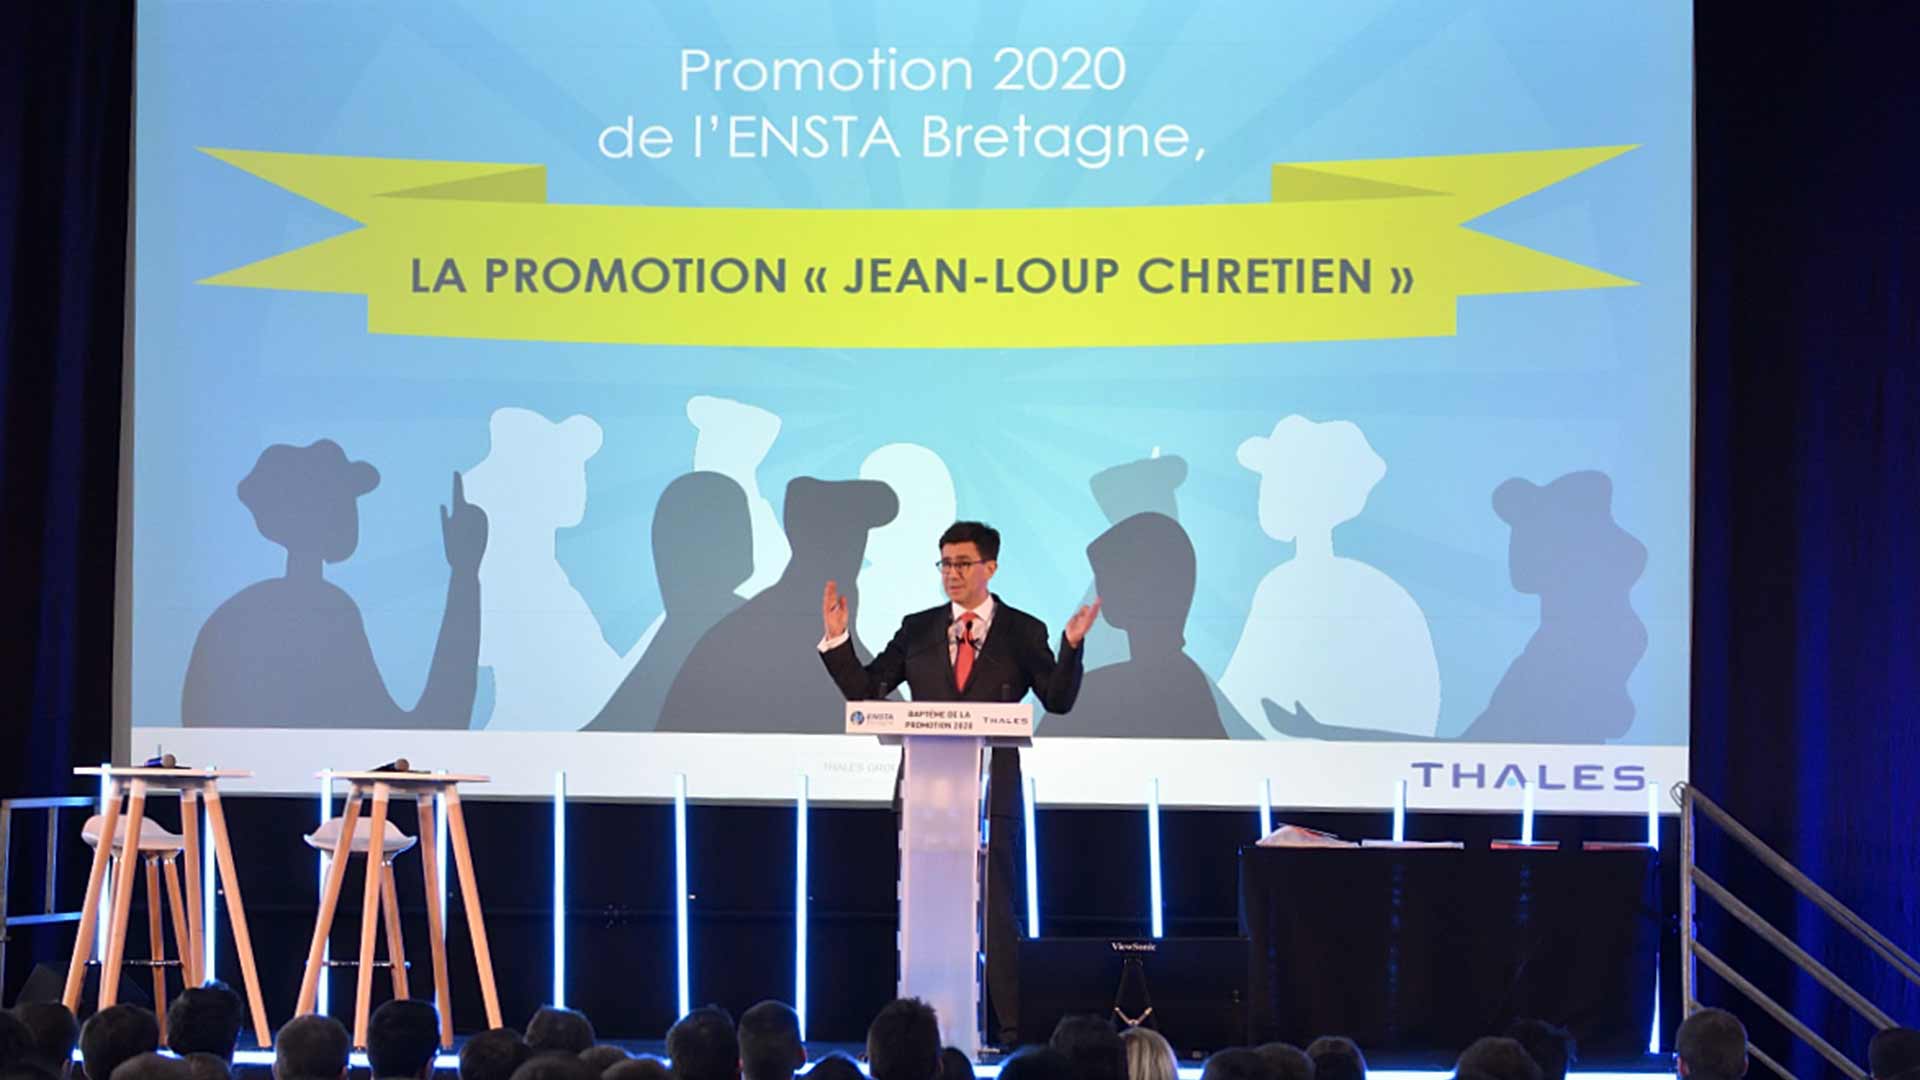 ENSTA Bretagne : Parrainage de la promotion 2020 "Jean-Loup Chrétien" par Pierre-Eric Pommellet, Thales